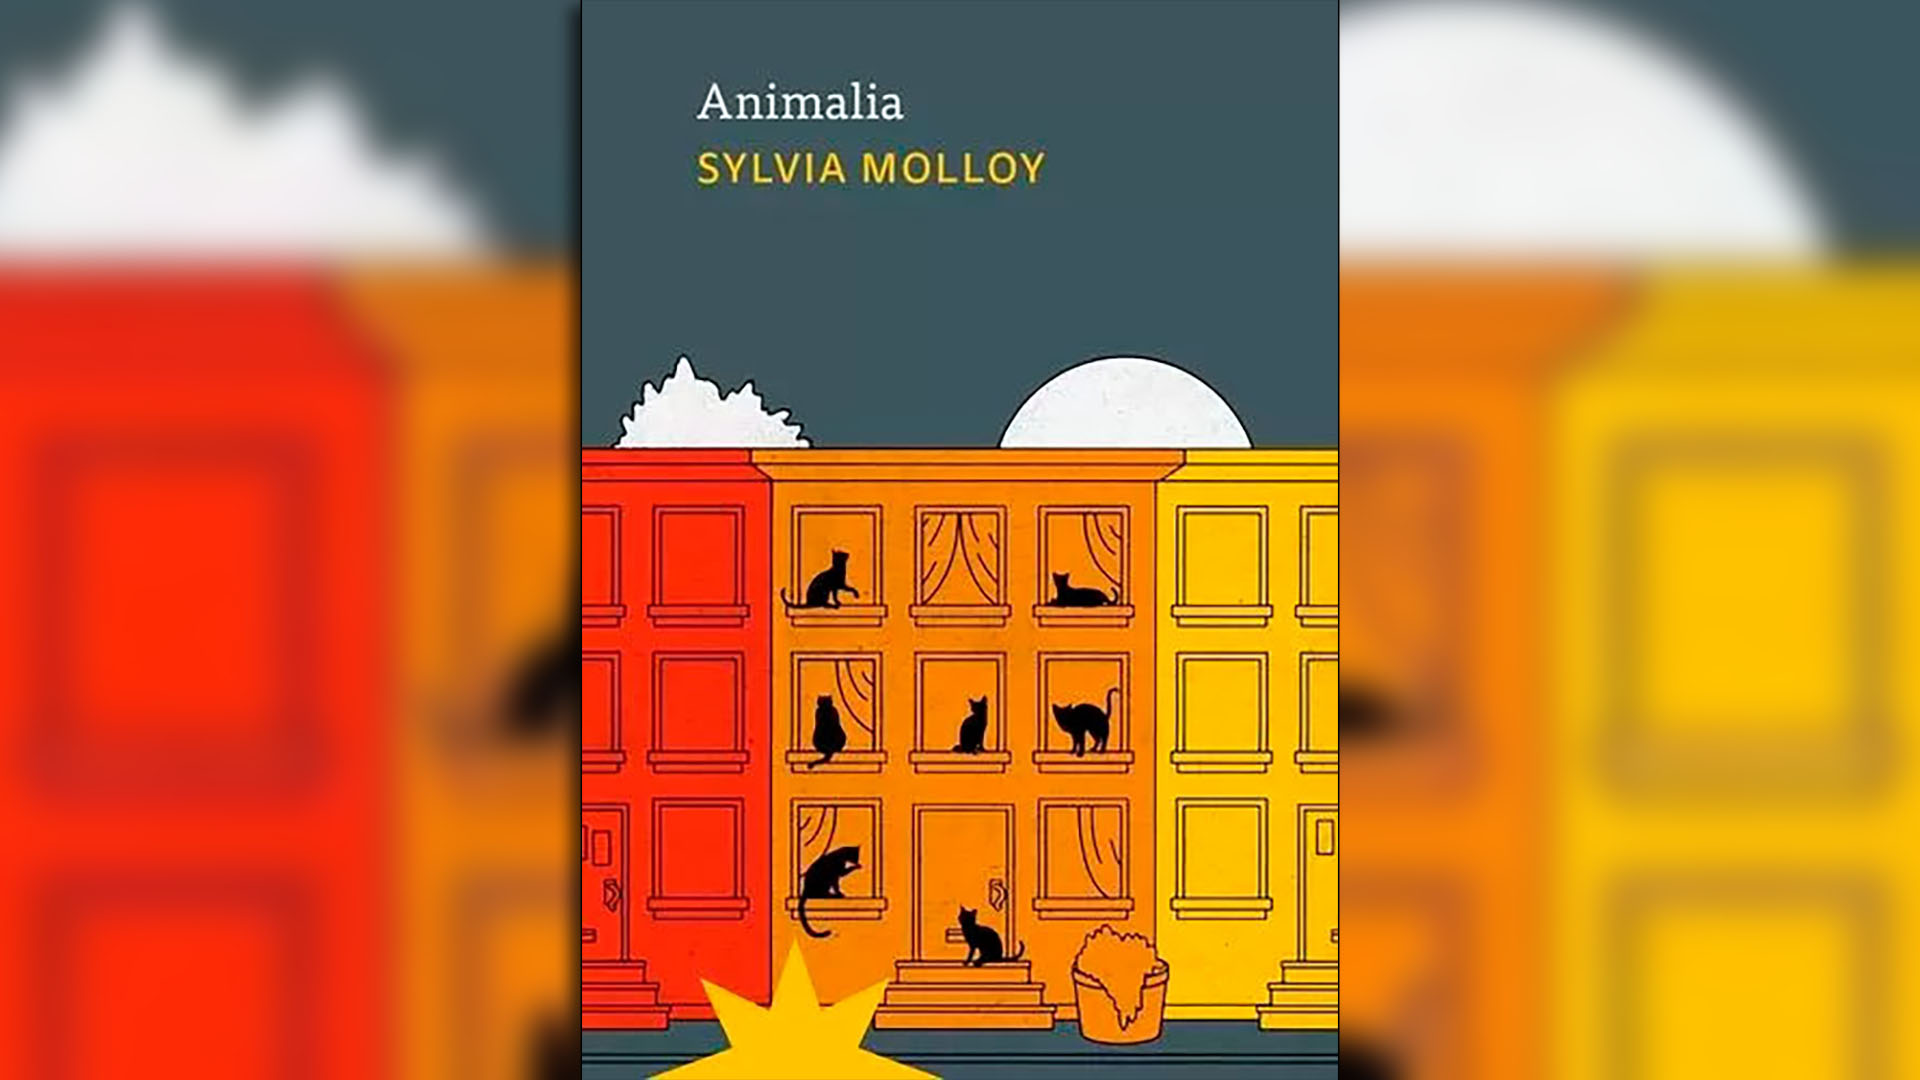 "Animalia", de Sylvia Molloy, fue publicado póstumamente por Eterna Cadencia.